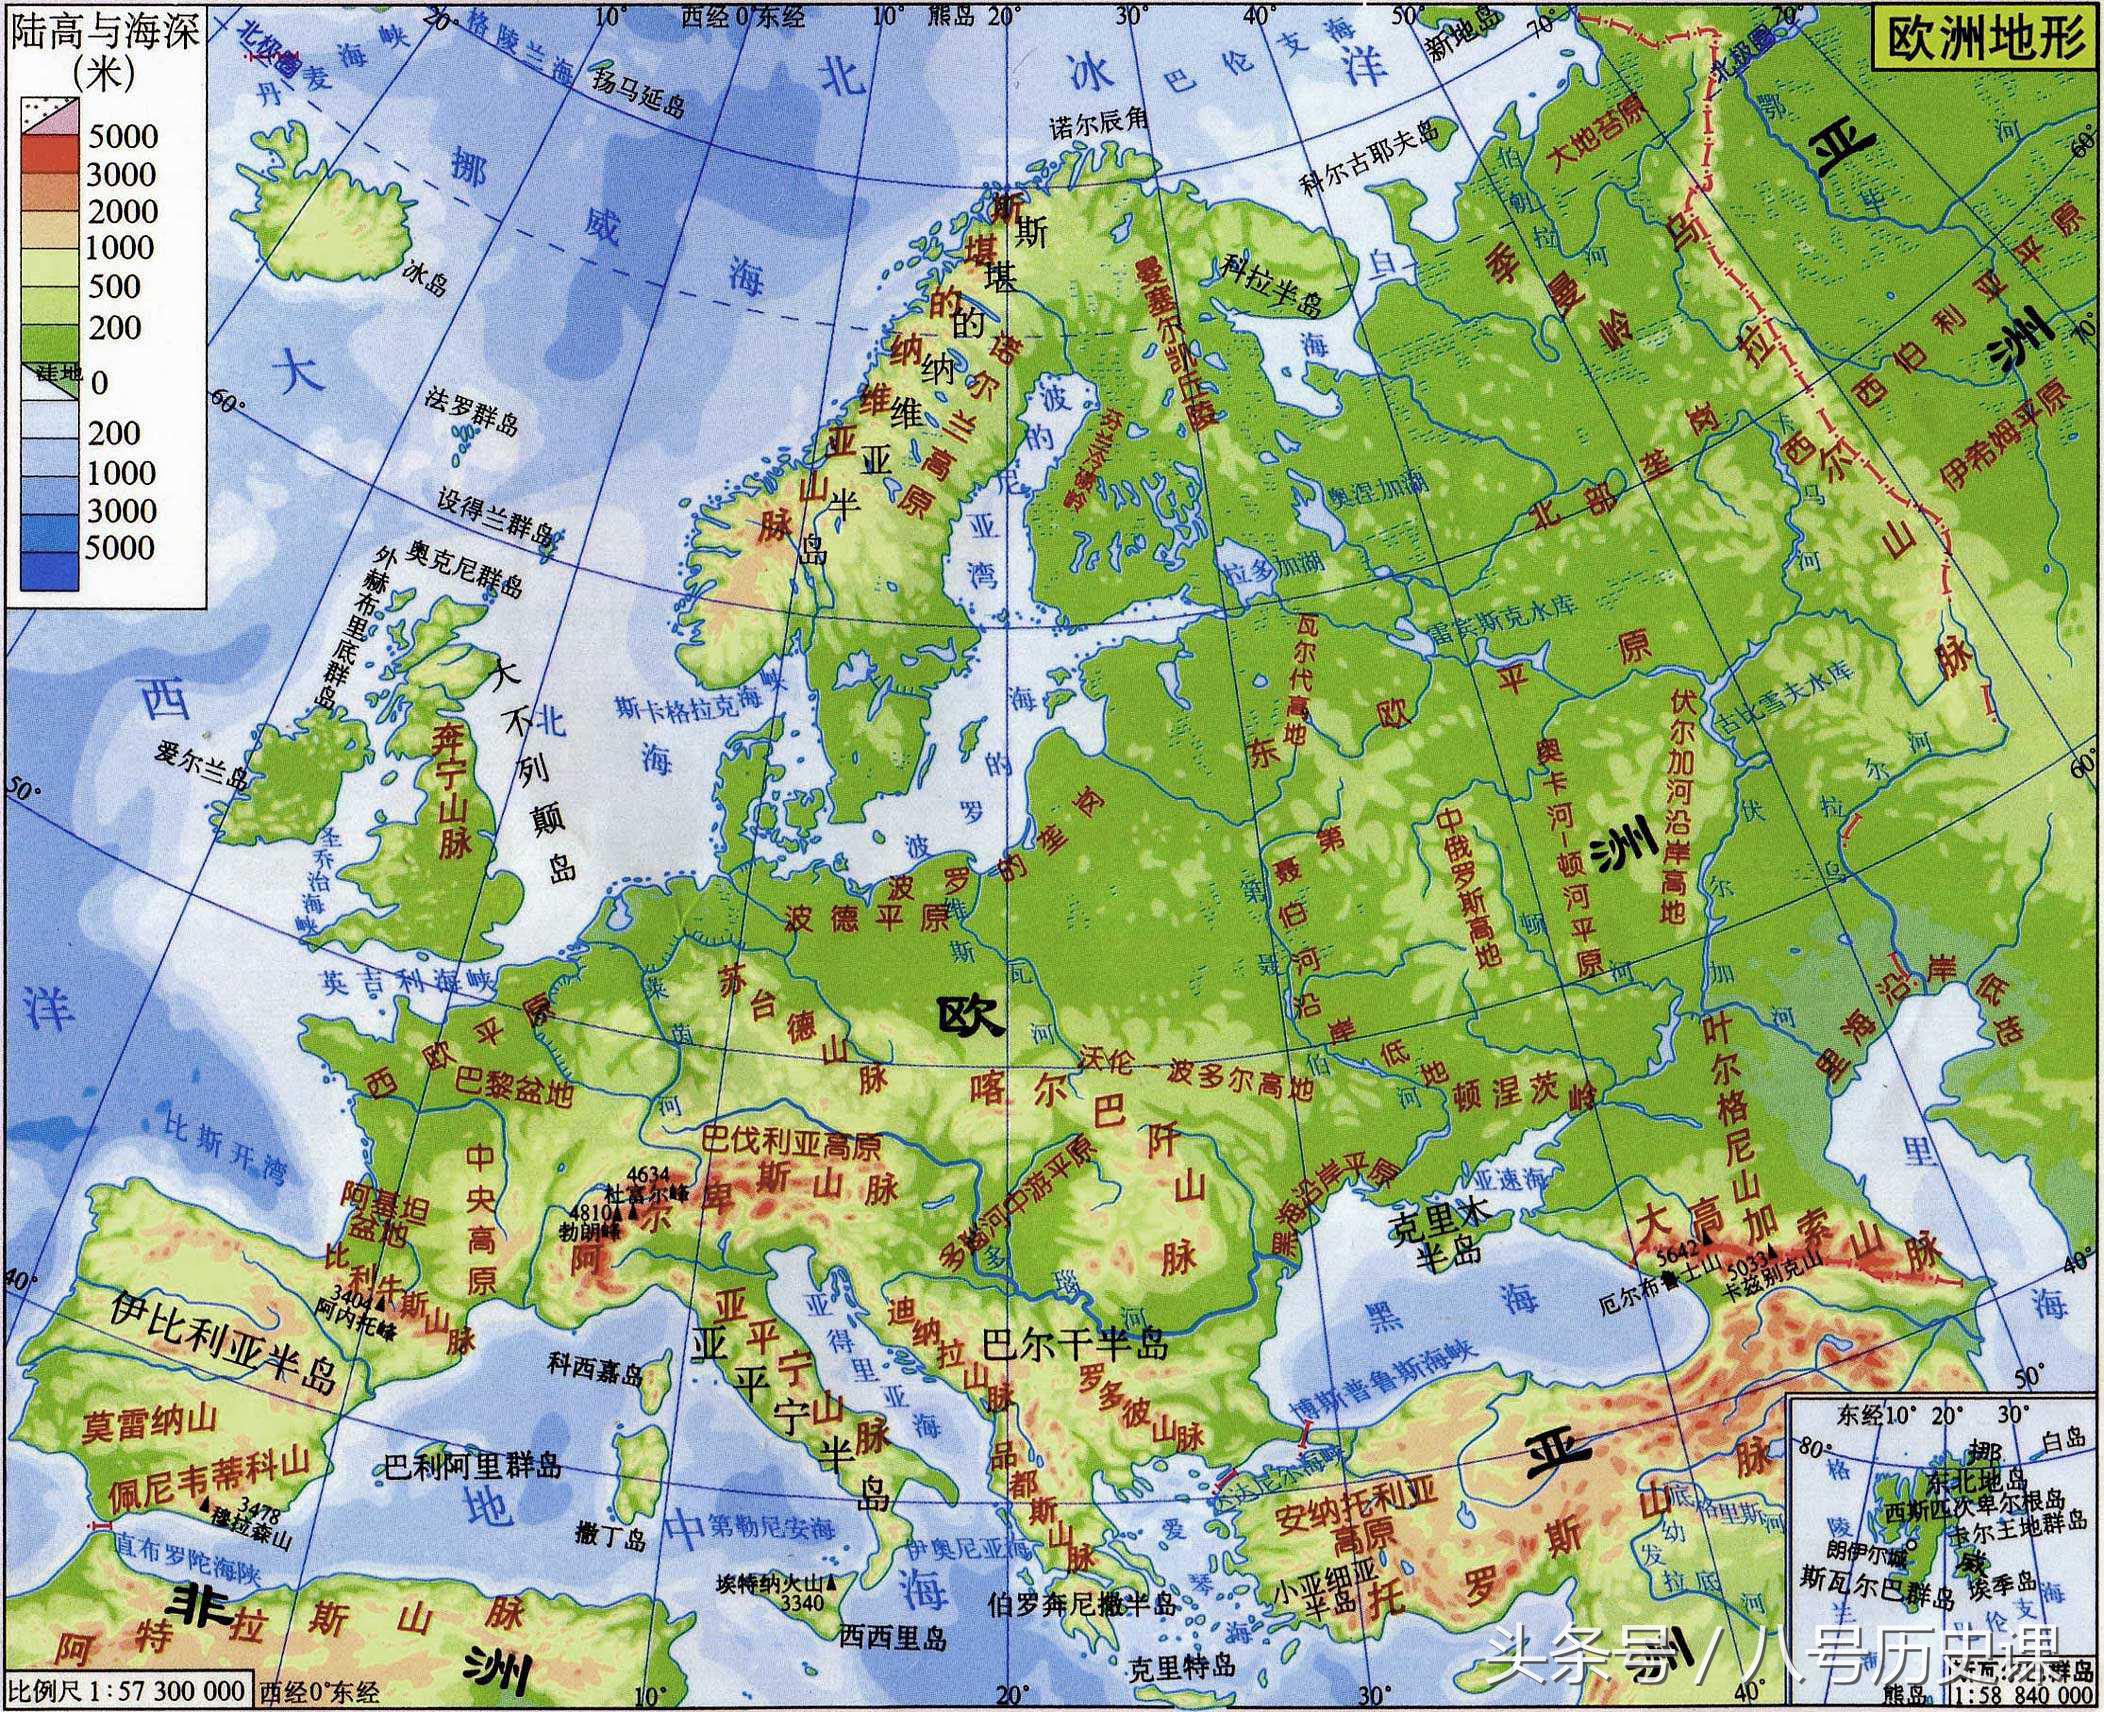 欧洲面积有多大整个欧洲面积除了俄罗斯有多大